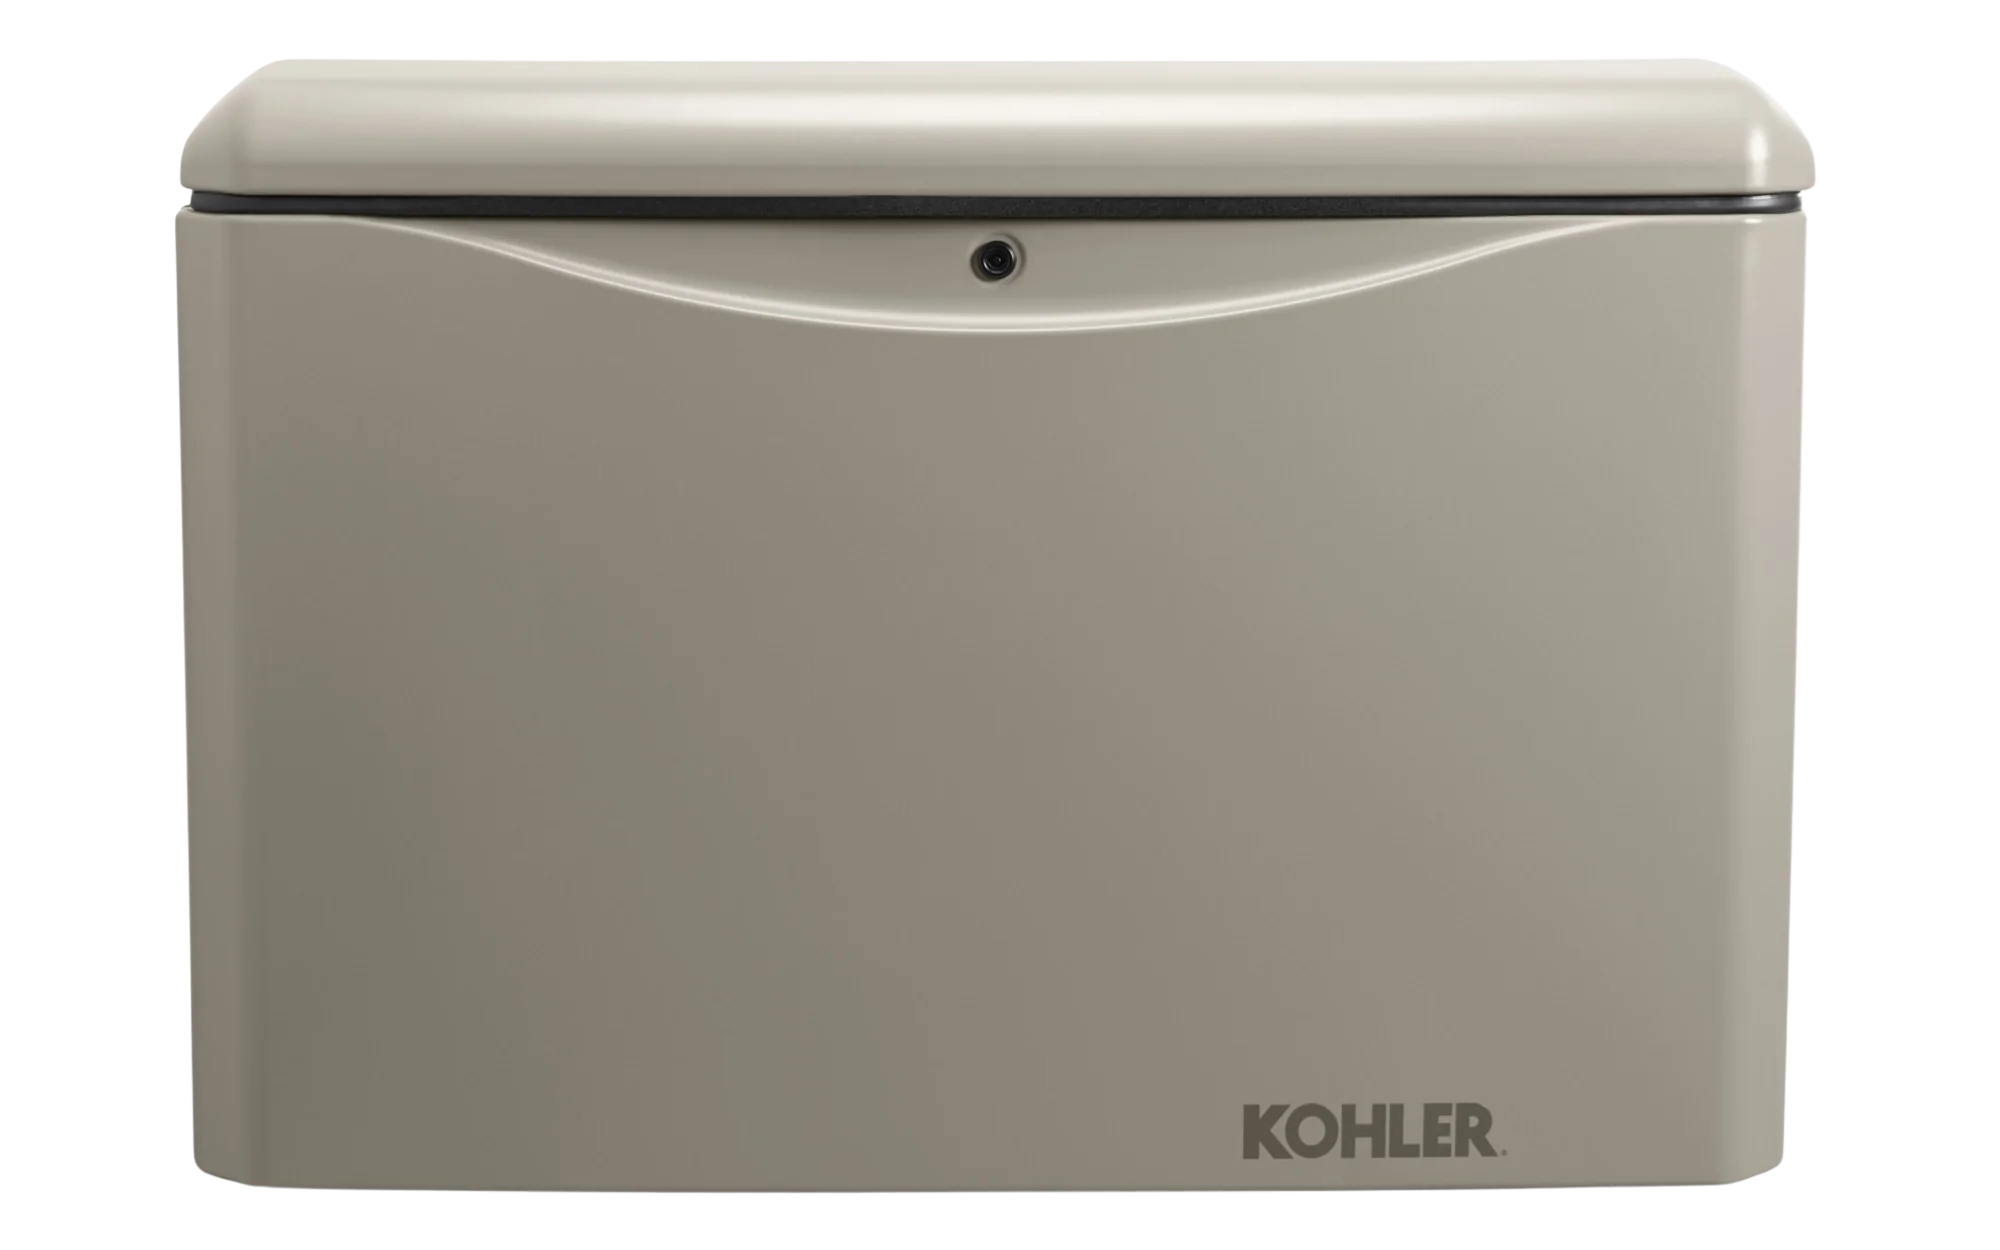 Kohler, Kohler 14RCA-QS7 14KW 120/208 3-Phase Standby Generator with OnCue Plus New